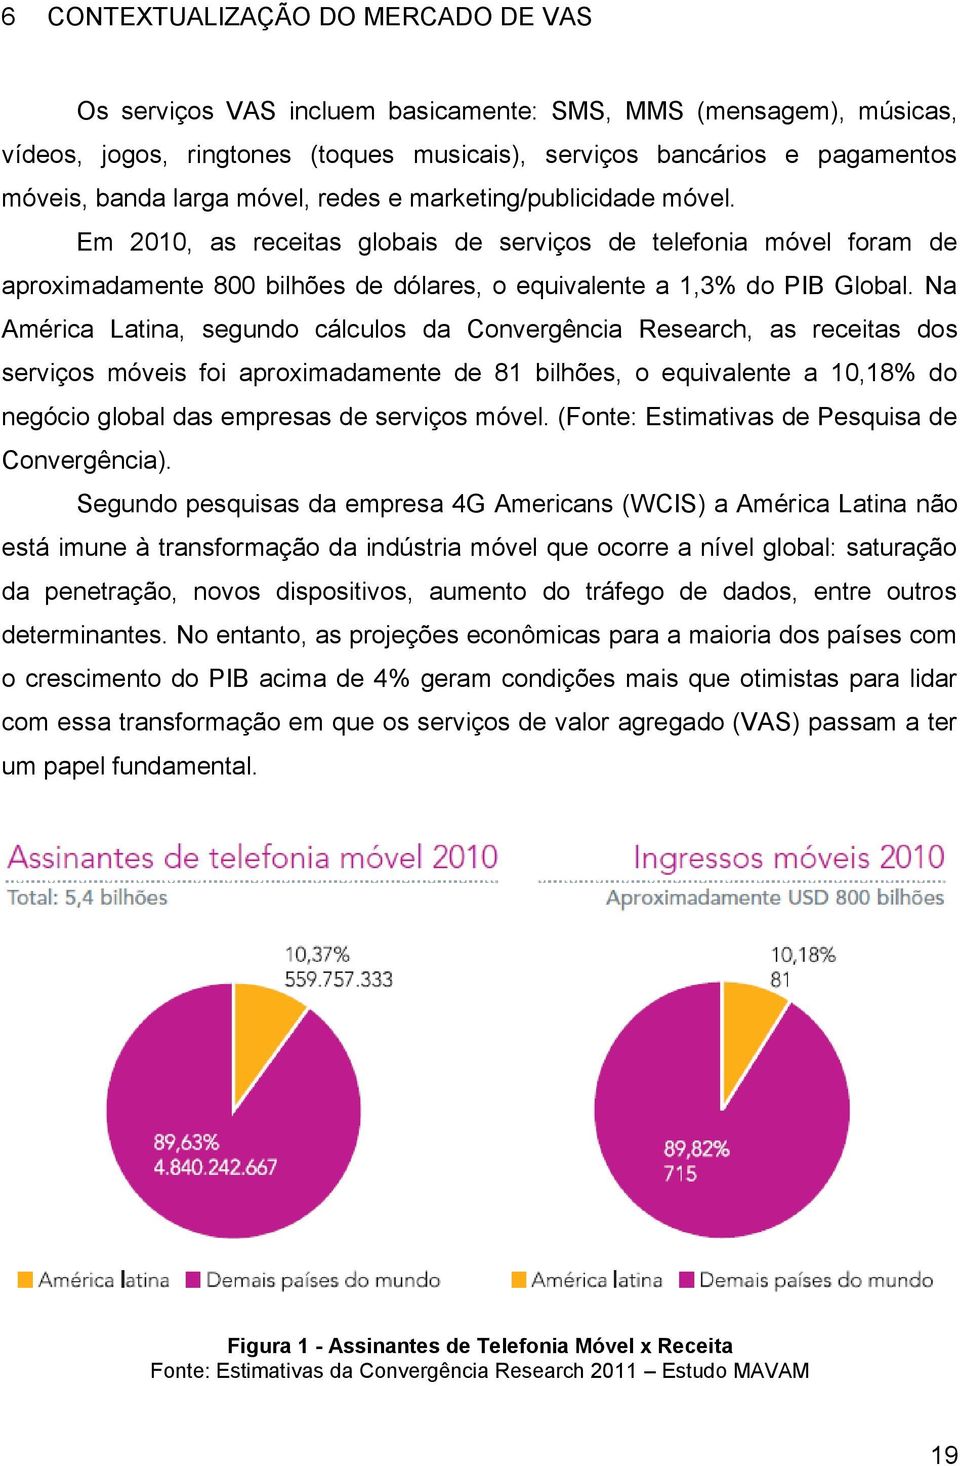 Na América Latina, segundo cálculos da Convergência Research, as receitas dos serviços móveis foi aproximadamente de 81 bilhões, o equivalente a 10,18% do negócio global das empresas de serviços